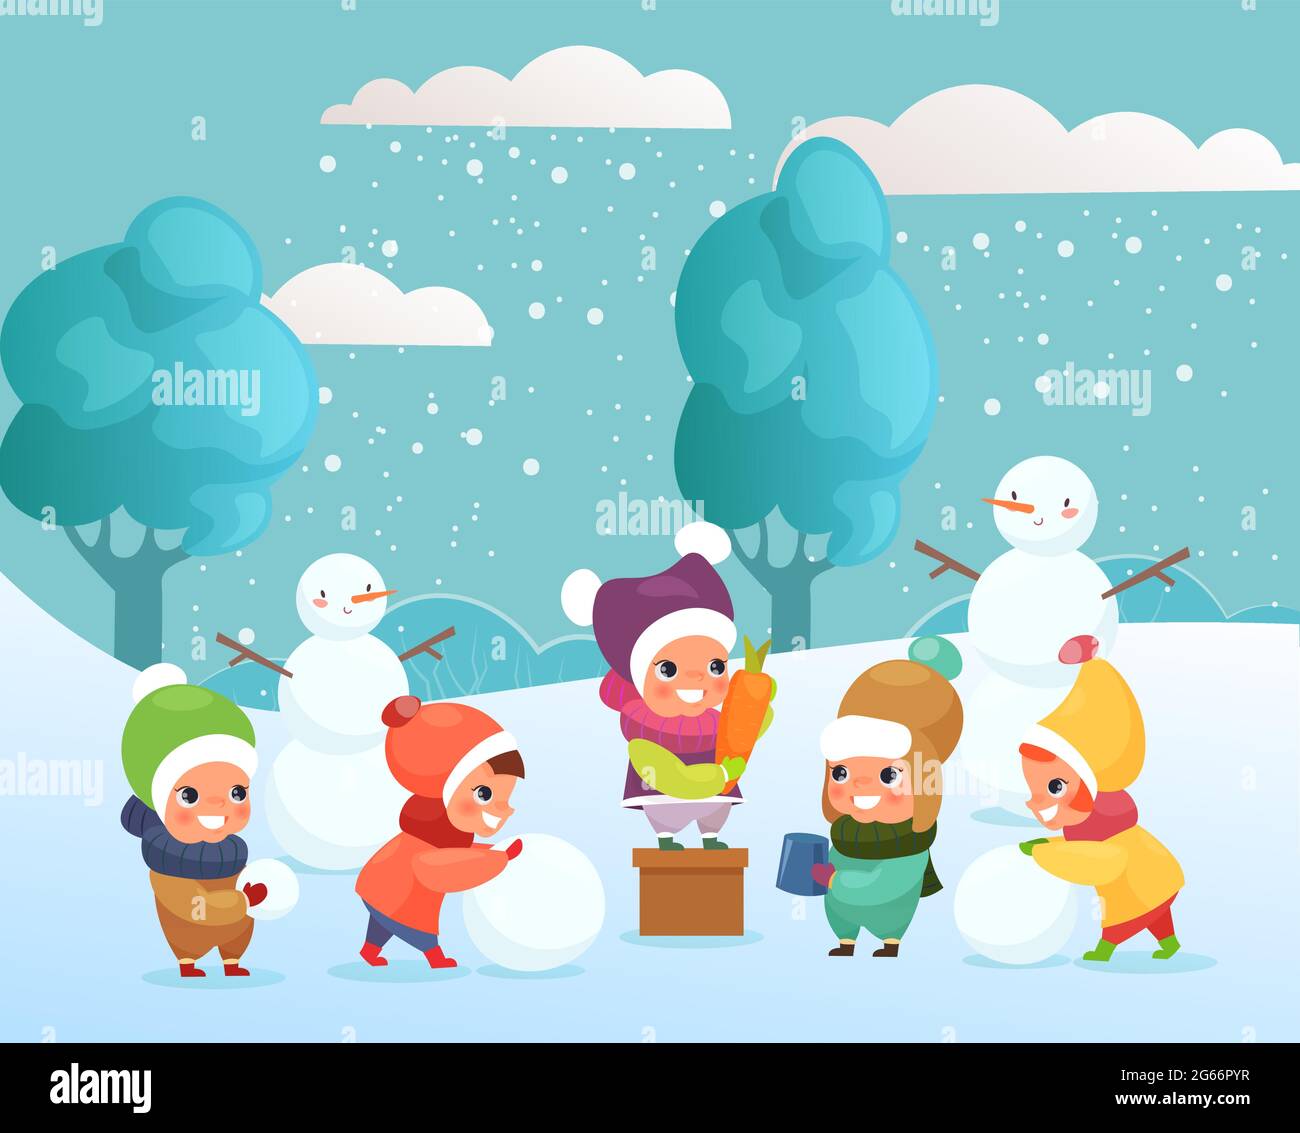 Illustration vectorielle de joyeux drôle et mignon enfants jouant avec la neige, faisant bonhomme de neige à l'extérieur. Enfants jouant, hiver concept de vacances dans un dessin animé plat Illustration de Vecteur